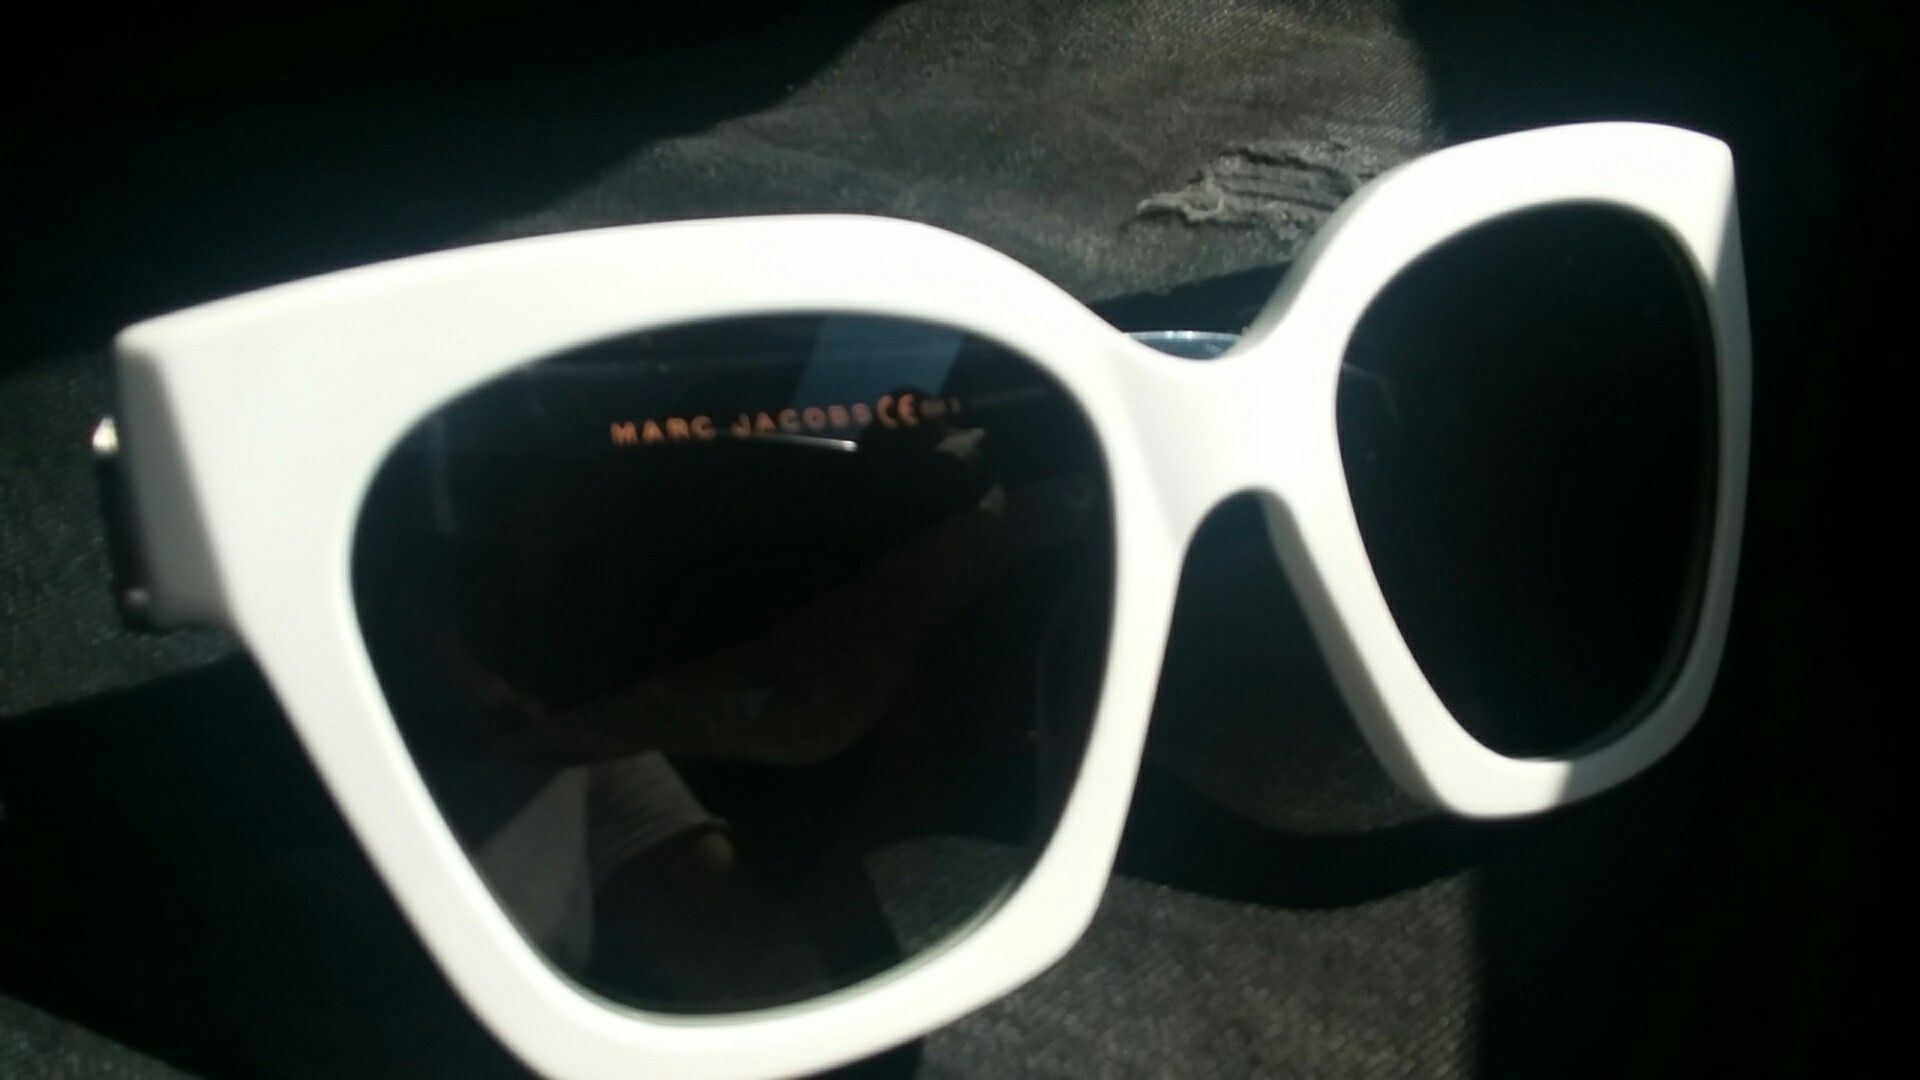 Marc Jacobs women's sunglasses